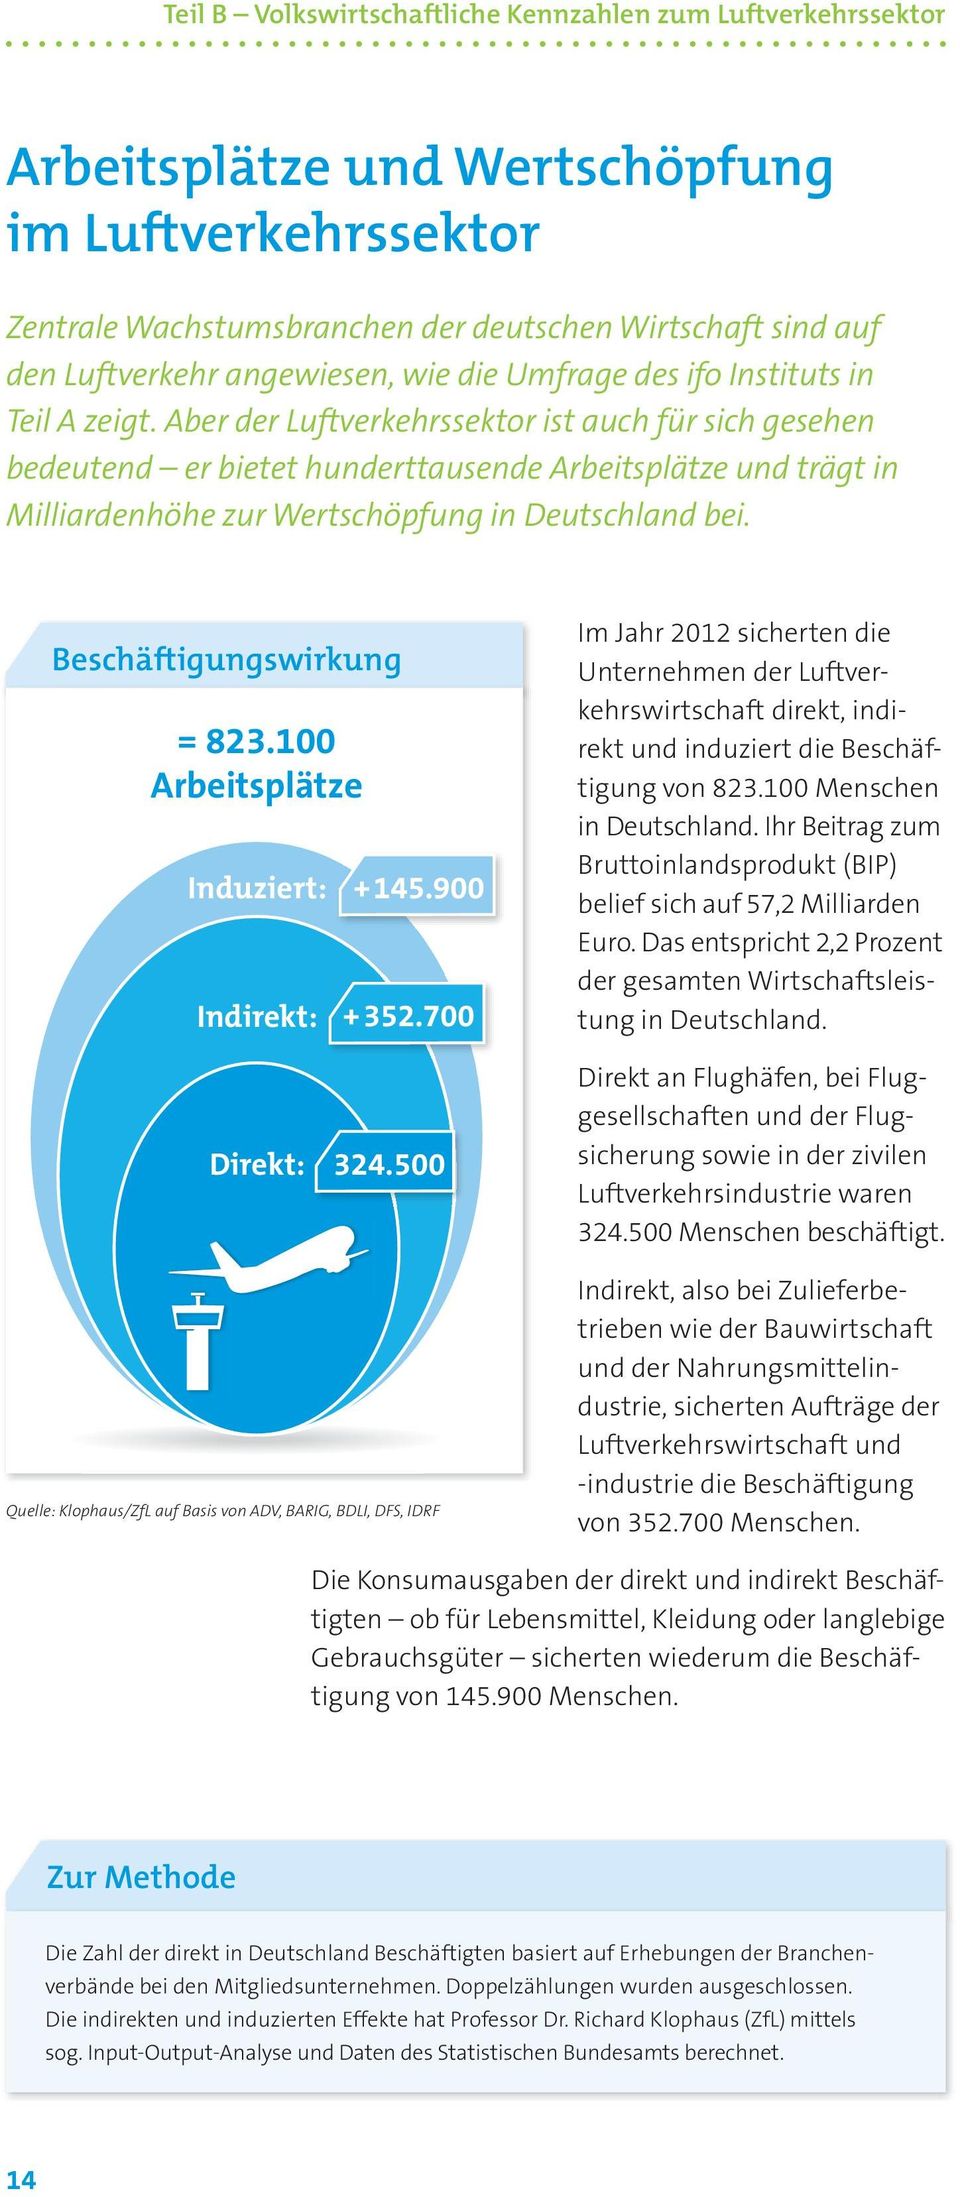 Aber der Luftverkehrssektor ist auch für sich gesehen bedeutend er bietet hunderttausende Arbeitsplätze und trägt in Milliardenhöhe zur Wertschöpfung in Deutschland bei. Beschäftigungswirkung = 823.